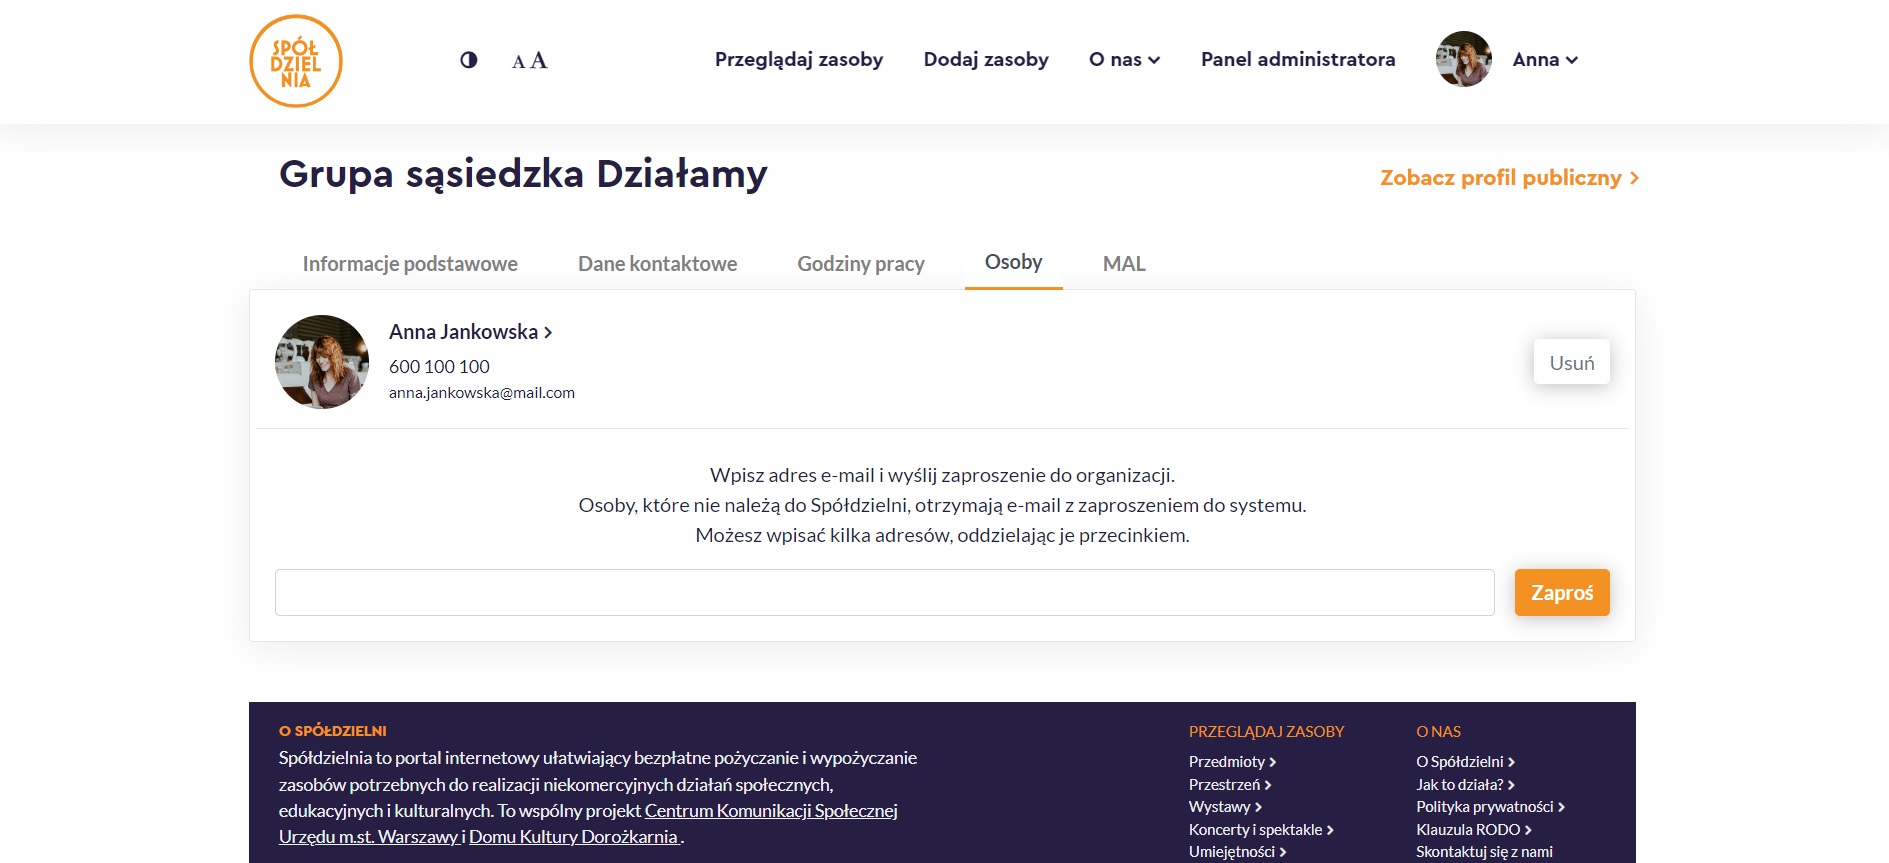 Zrzut ekranu strony profilowej instytucji/organizacji z rozwiniętą zakładką Osoby oraz zaznaczonym komunikatem o konieczności wpisania adresu e-mail zapraszanej osoby